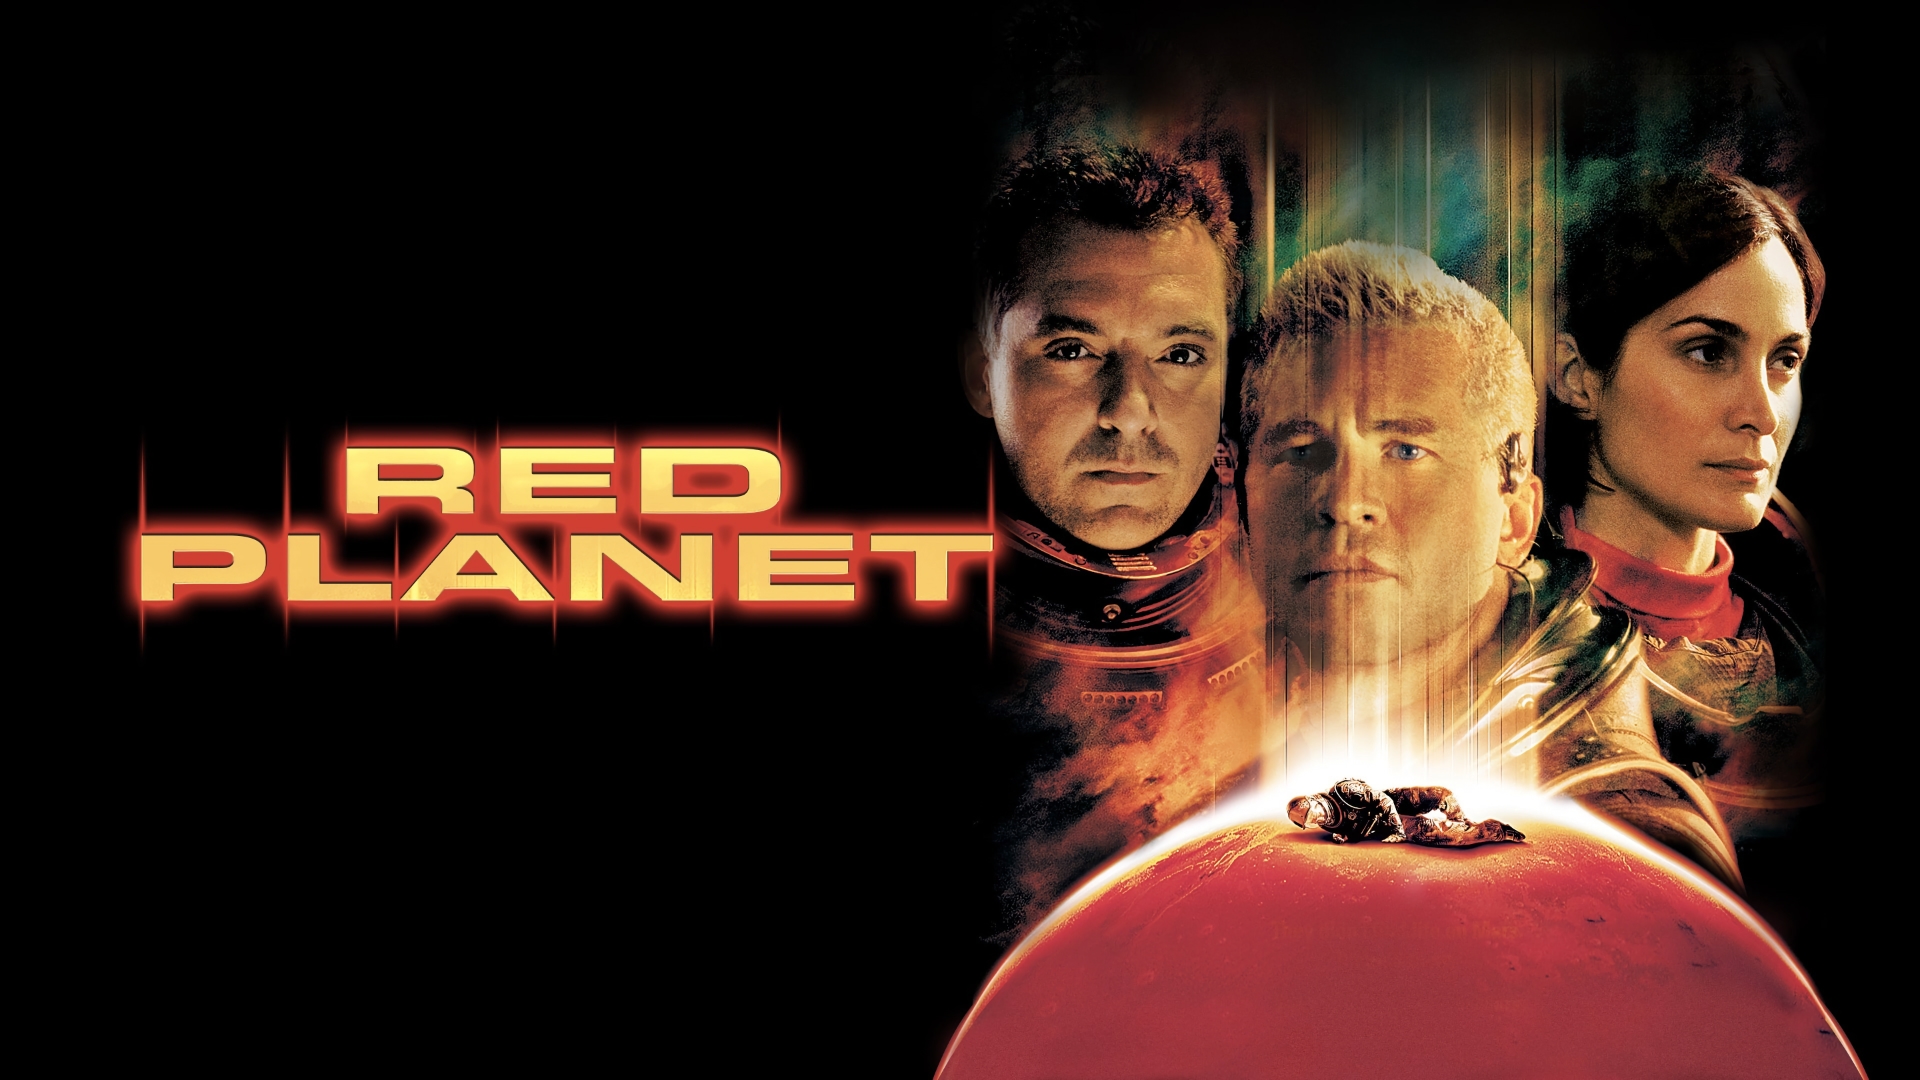 ນະວັດຕະກໍາຂອງຄວາມຄິດ: Red Planet (ດາວເຄາະສີແດງ) ເປັນຮູບເງົາທີ່ທັນເວລາຫຼາຍ